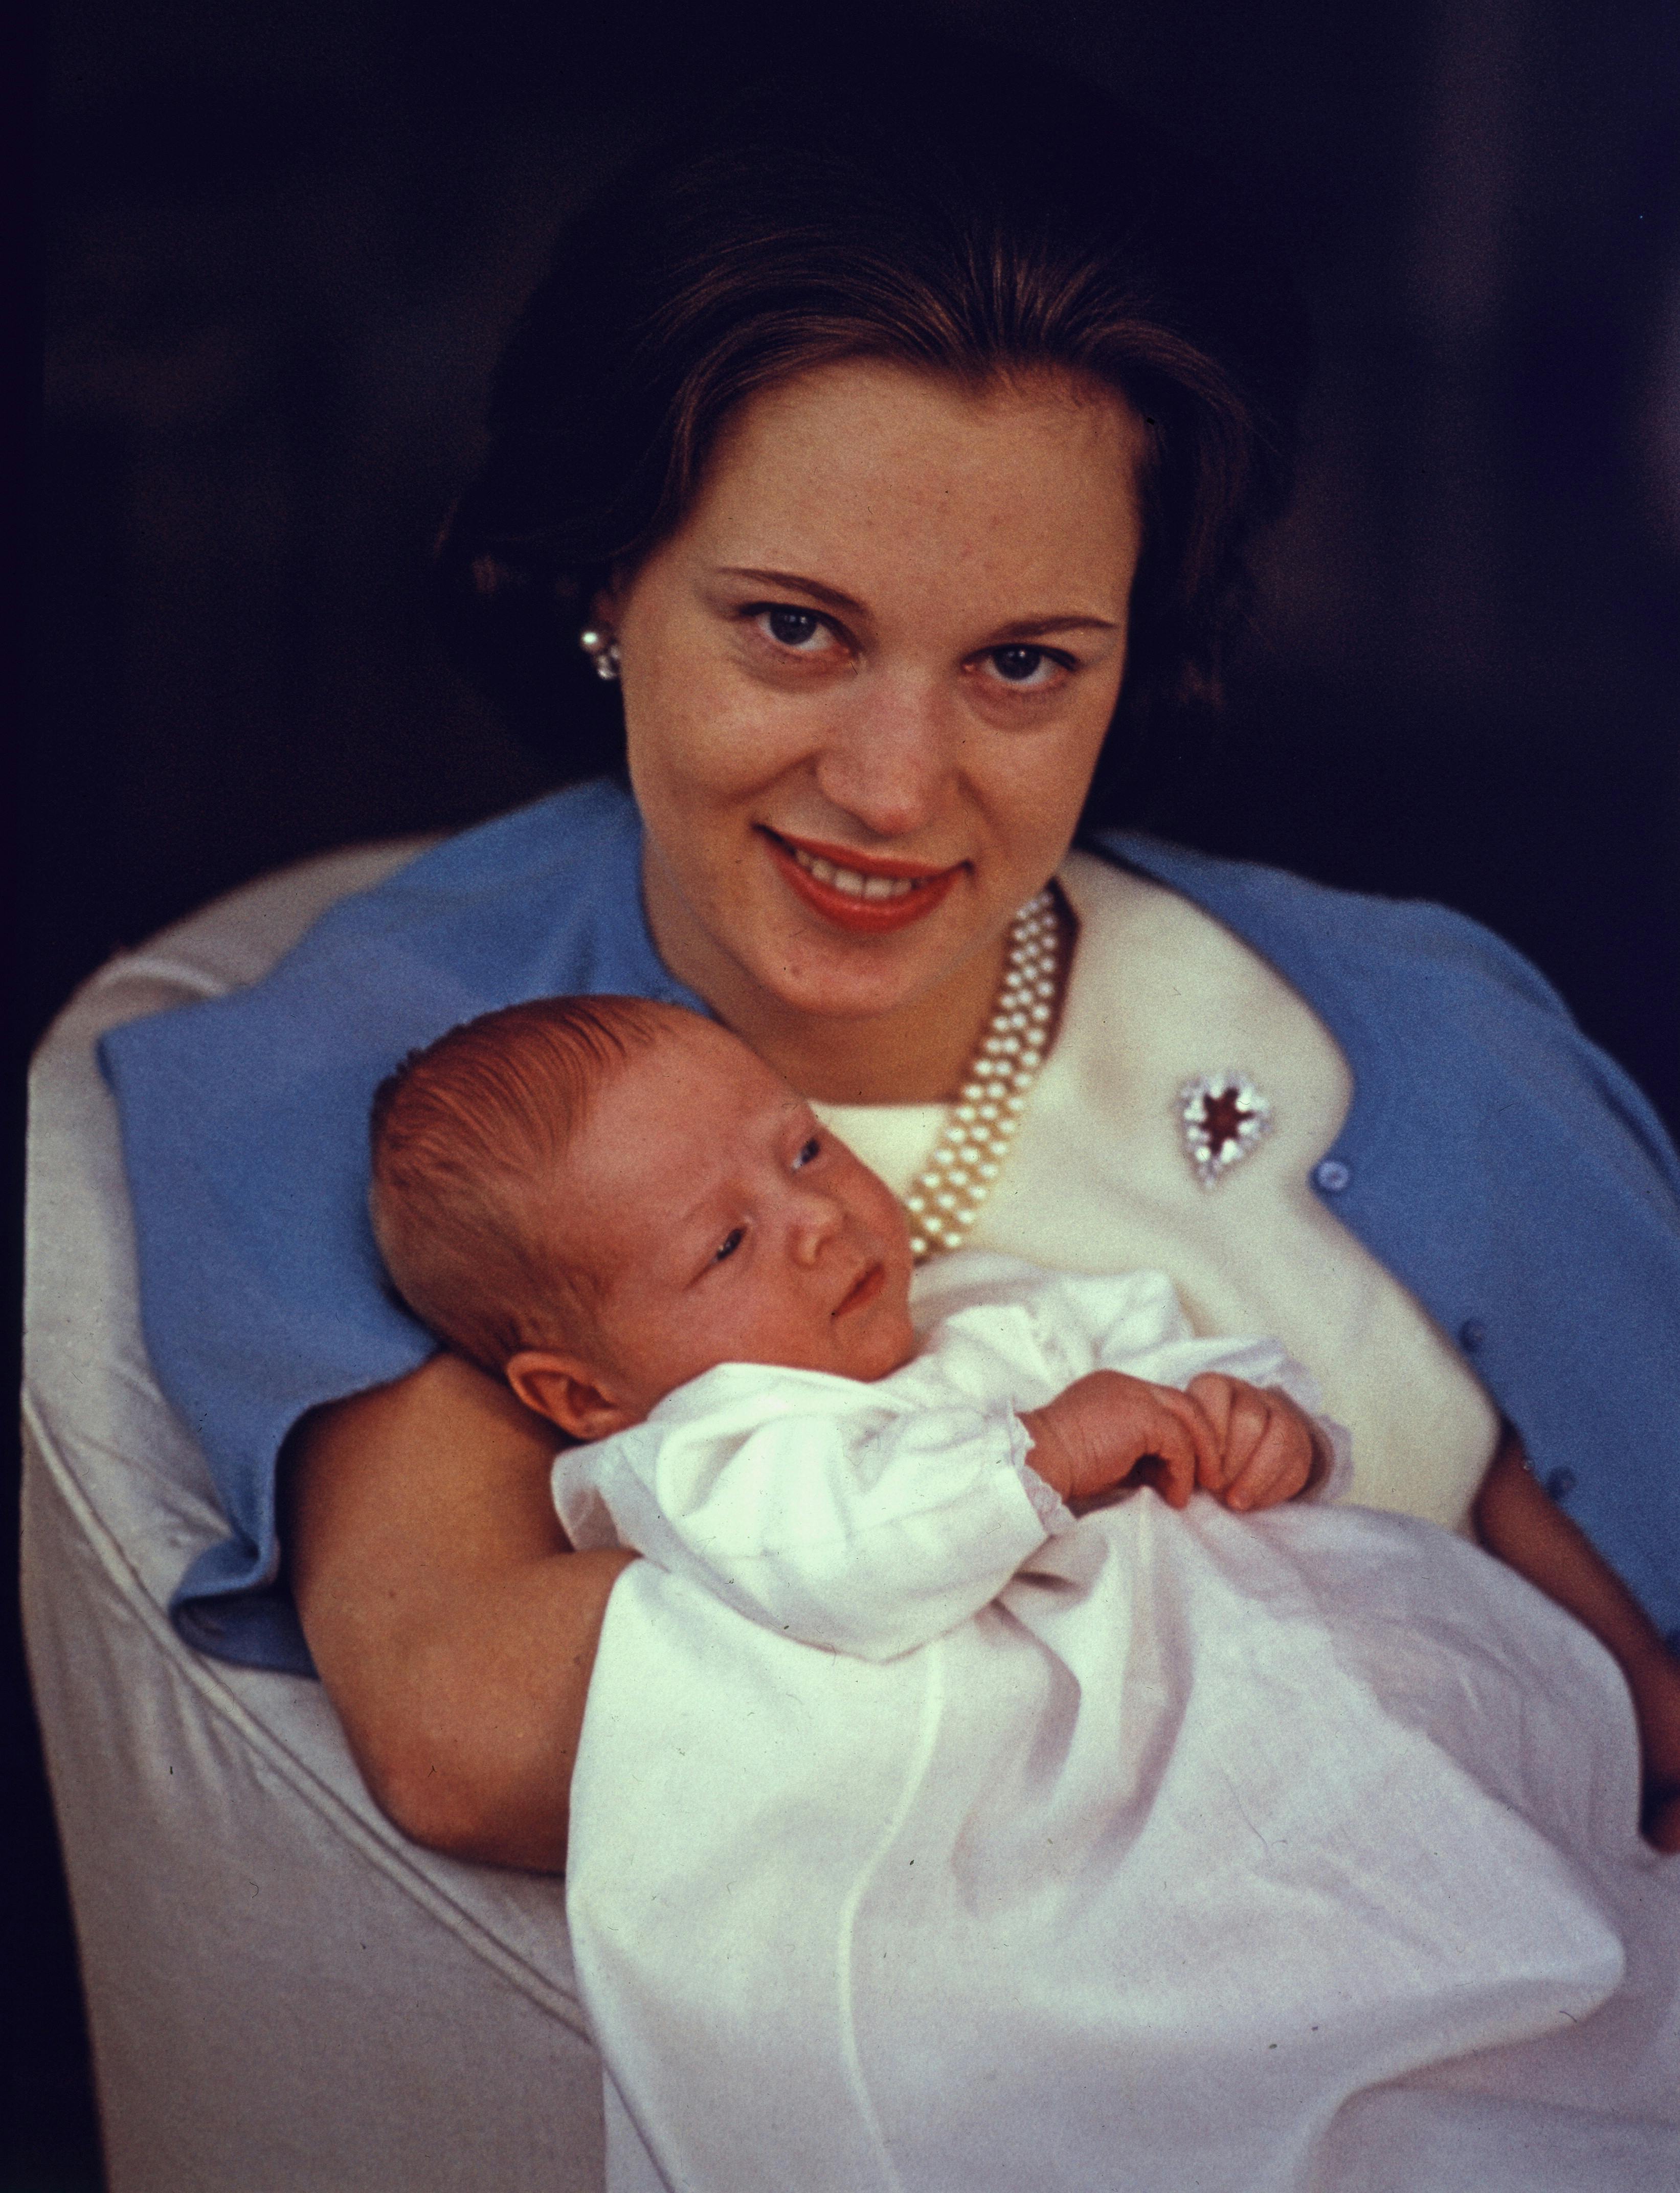 Prinsesse Benedikte med en nyfødt prins Gustav i armene.
